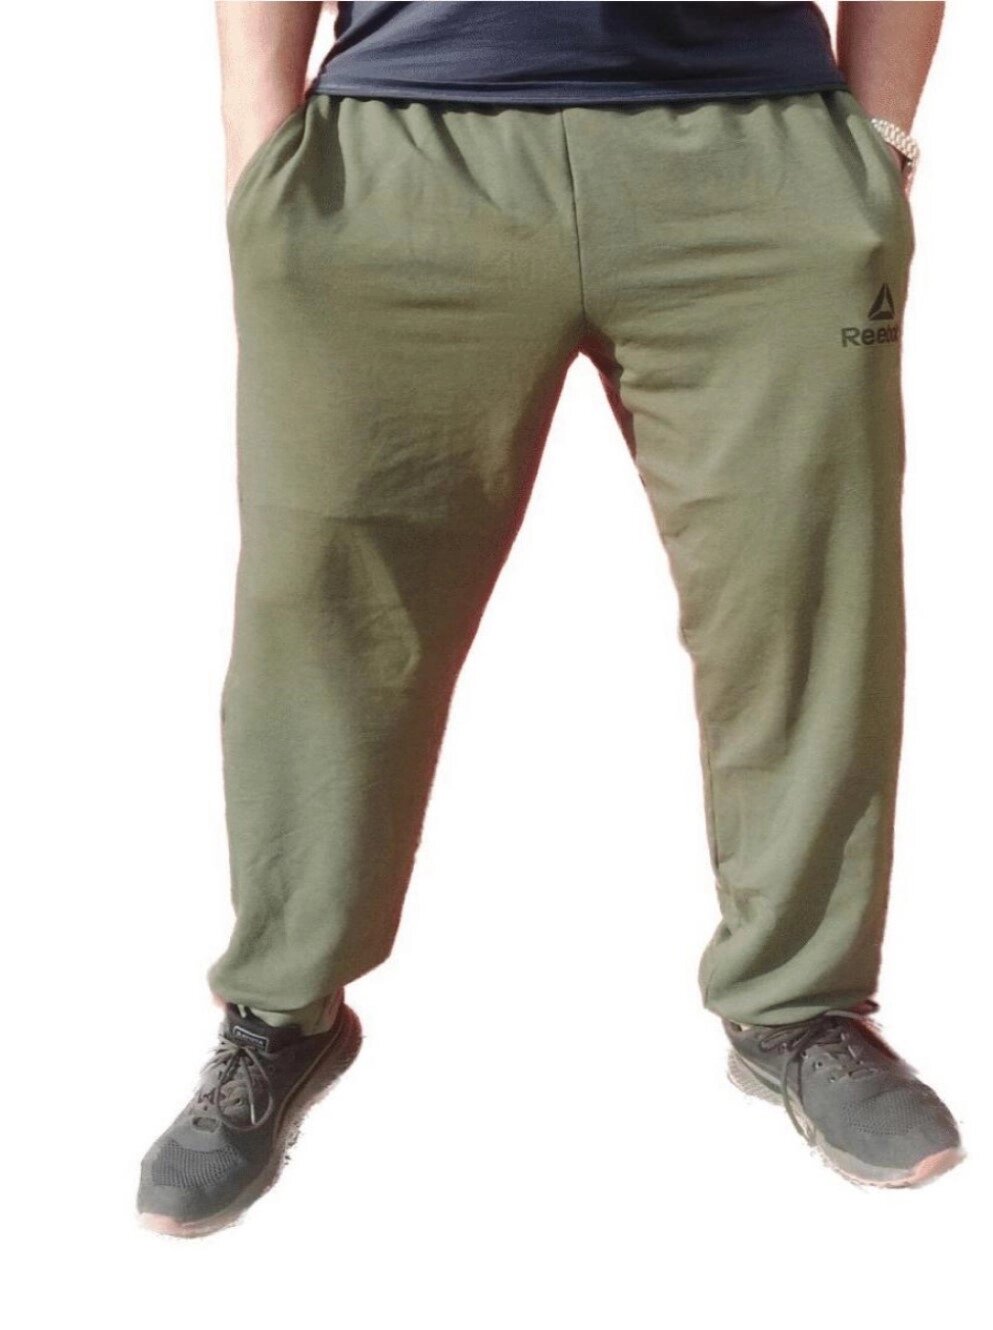 Чоловічі  спортивні шани БАТАЛ весна від компанії Чоловічий одяг великих розмірів - фото 1